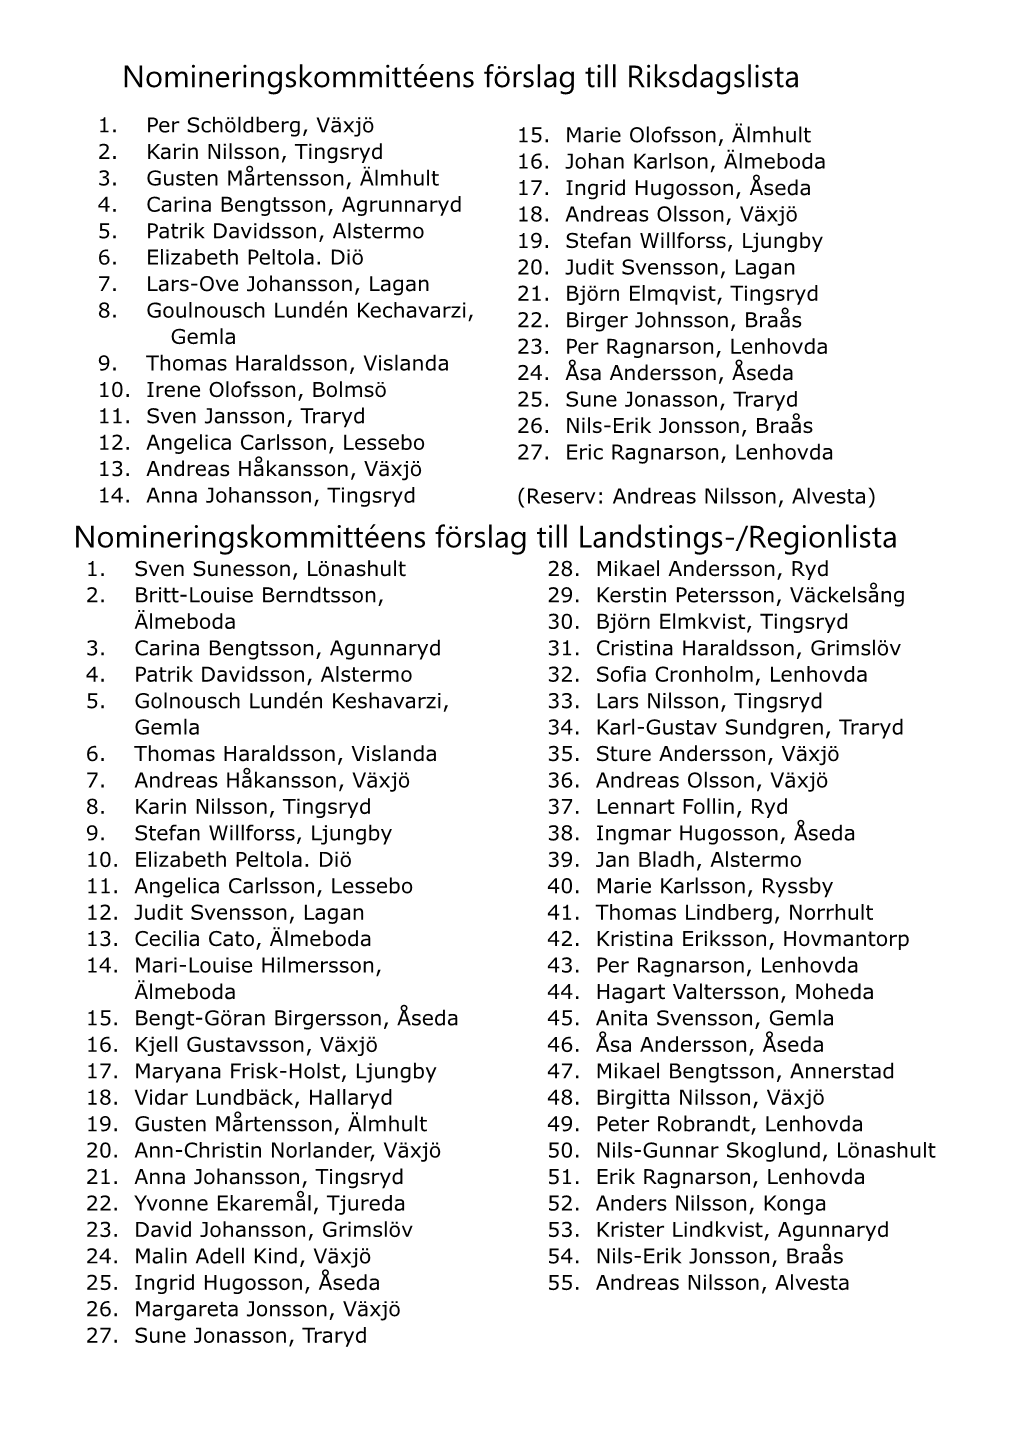 Nomineringskommittéens Förslag Till Riksdags- Och Regionlista.Pdf